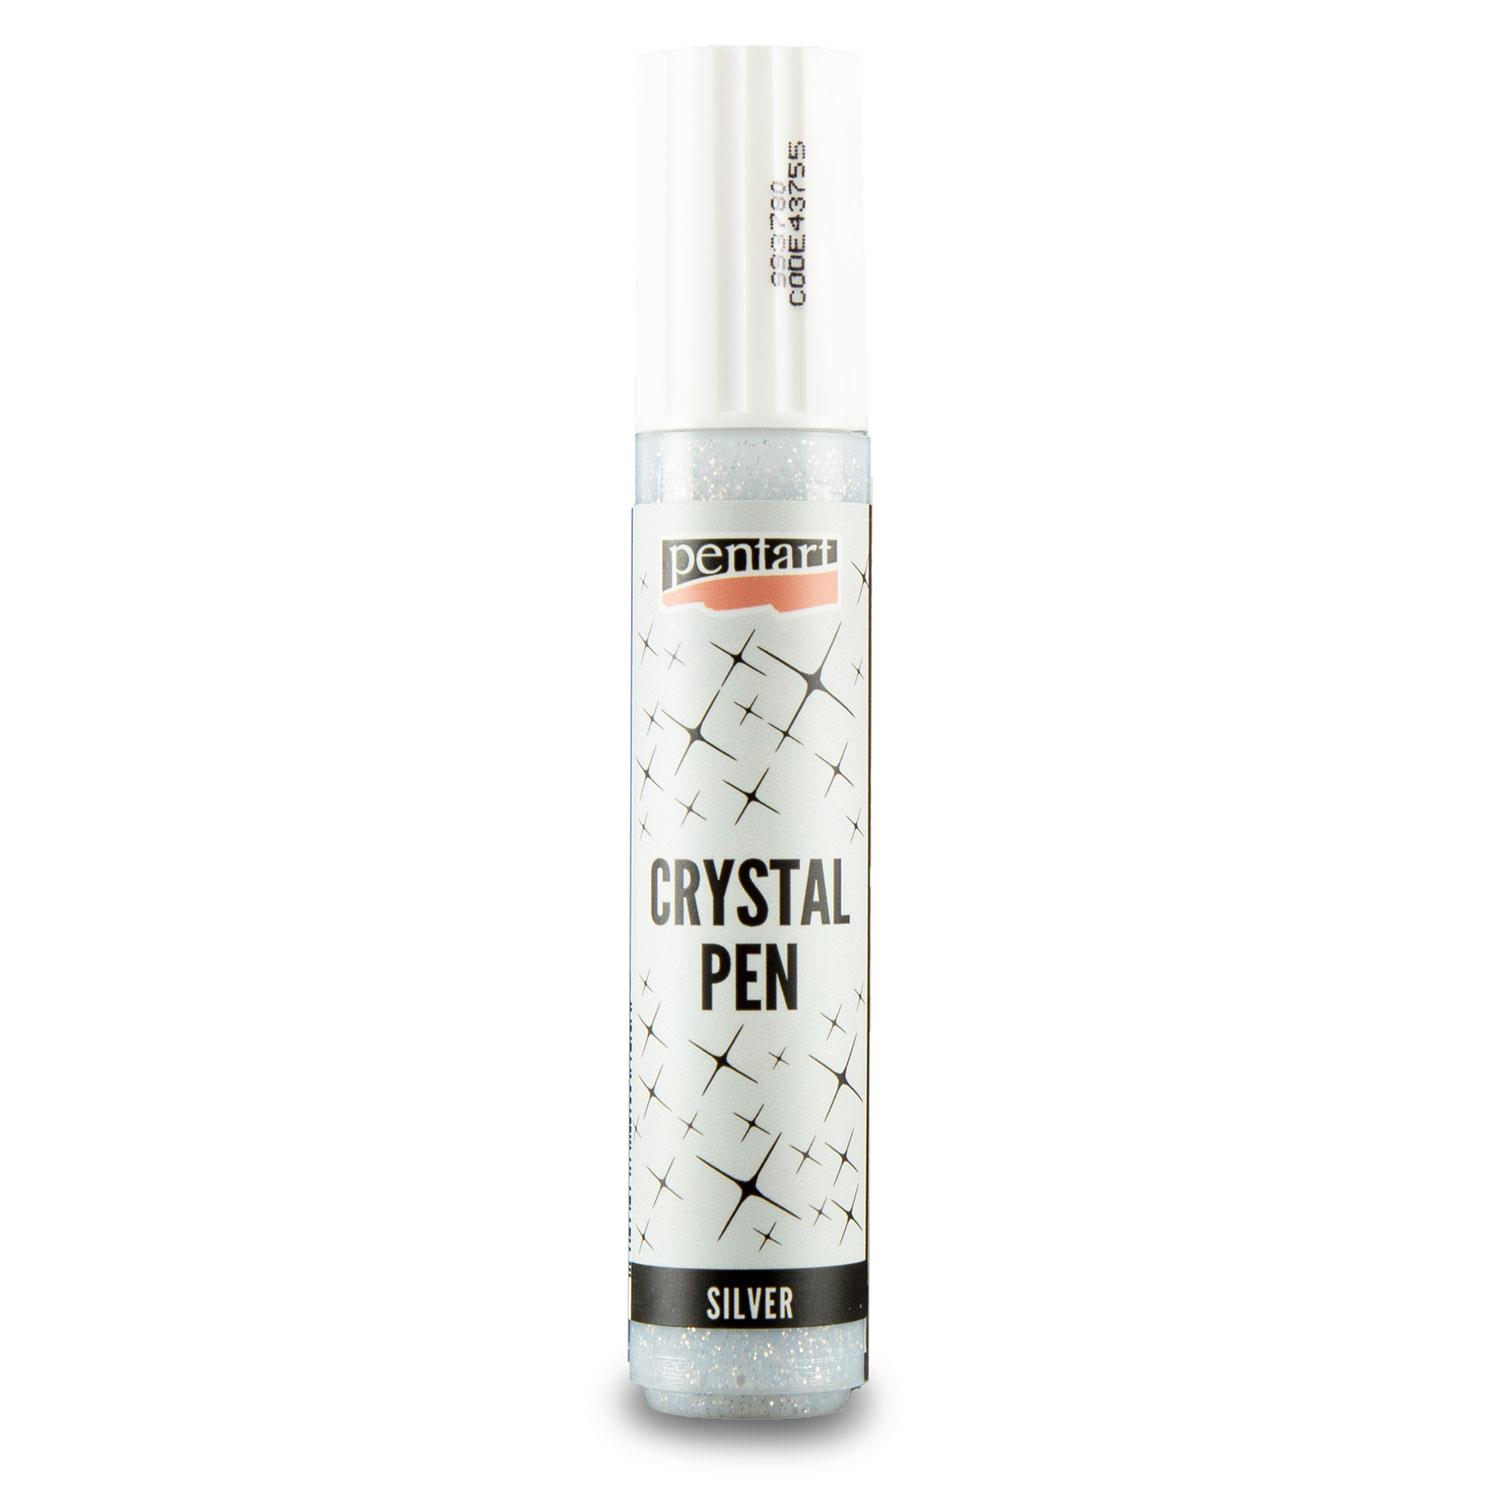 Pentart 30ml Crystal Pen Pick-n-Mix  - Choose 2 - Silver